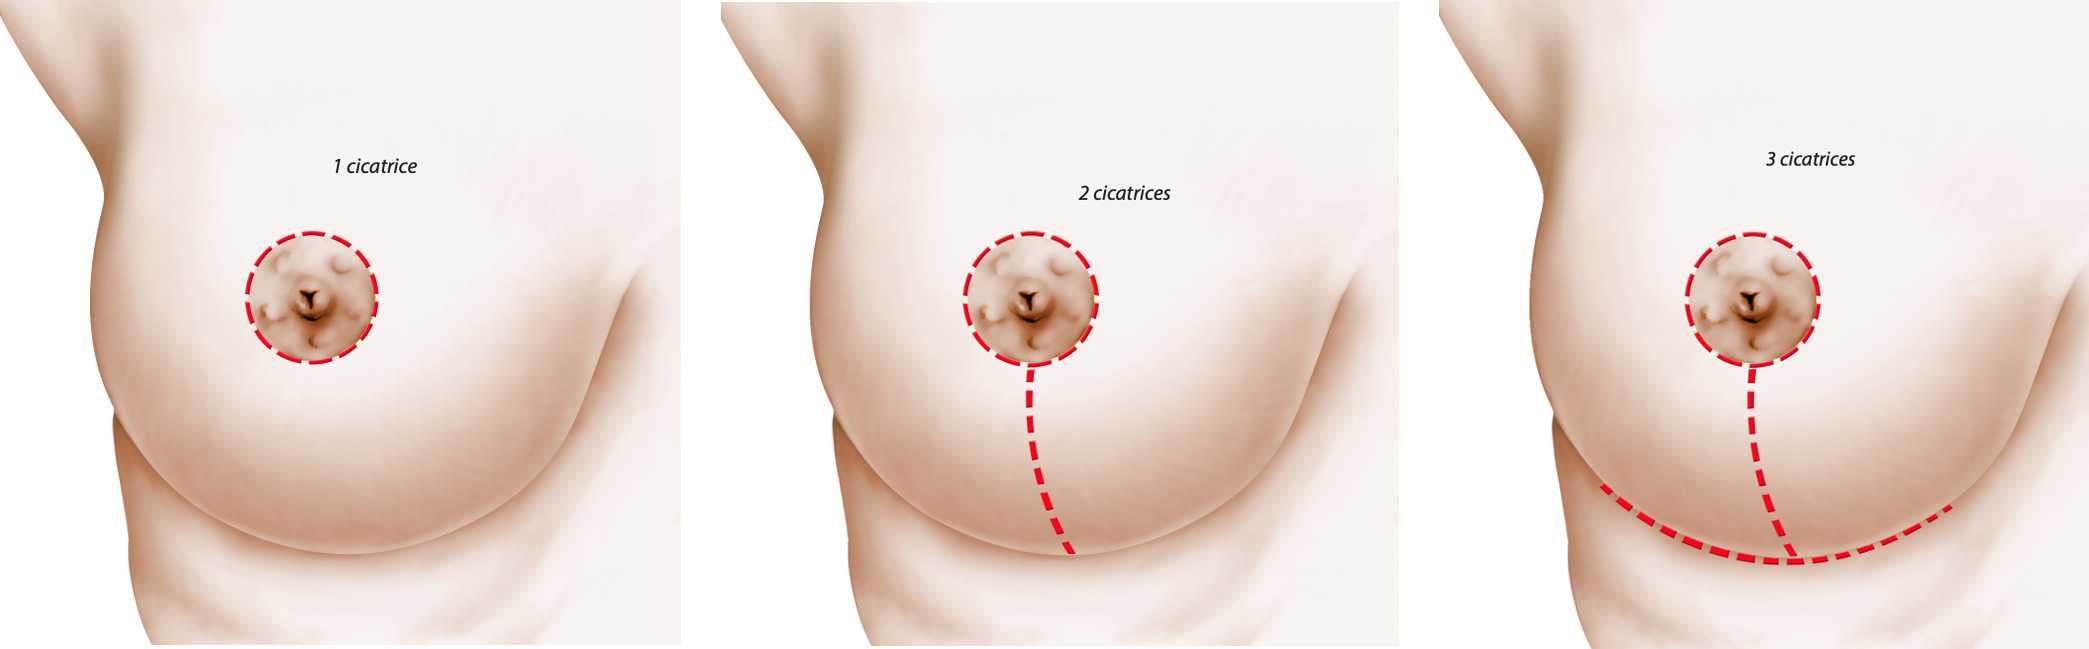 уменьшение груди при беременности фото 40